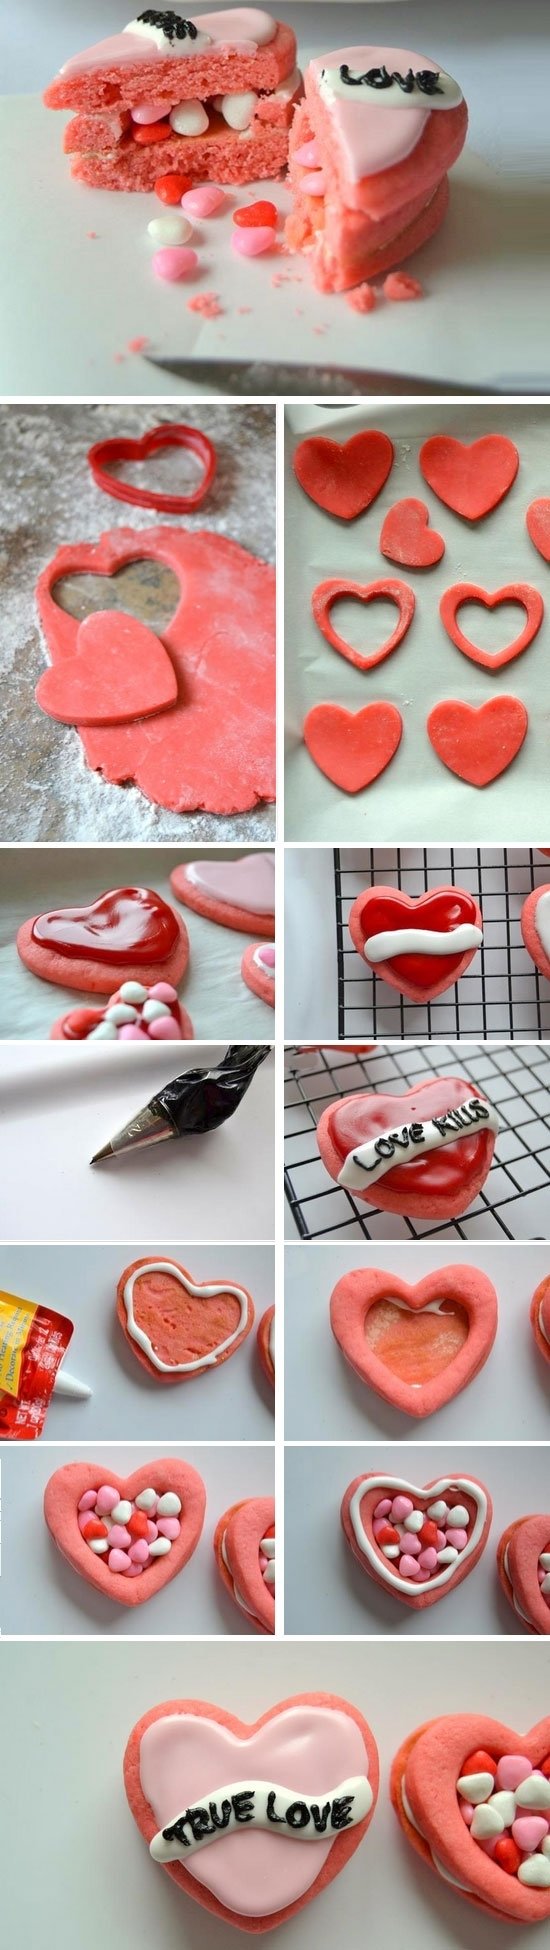 10 Unique Valentine Gift Ideas For Him Homemade romantic valentines day ideas boyfriend startupcorner co 2022